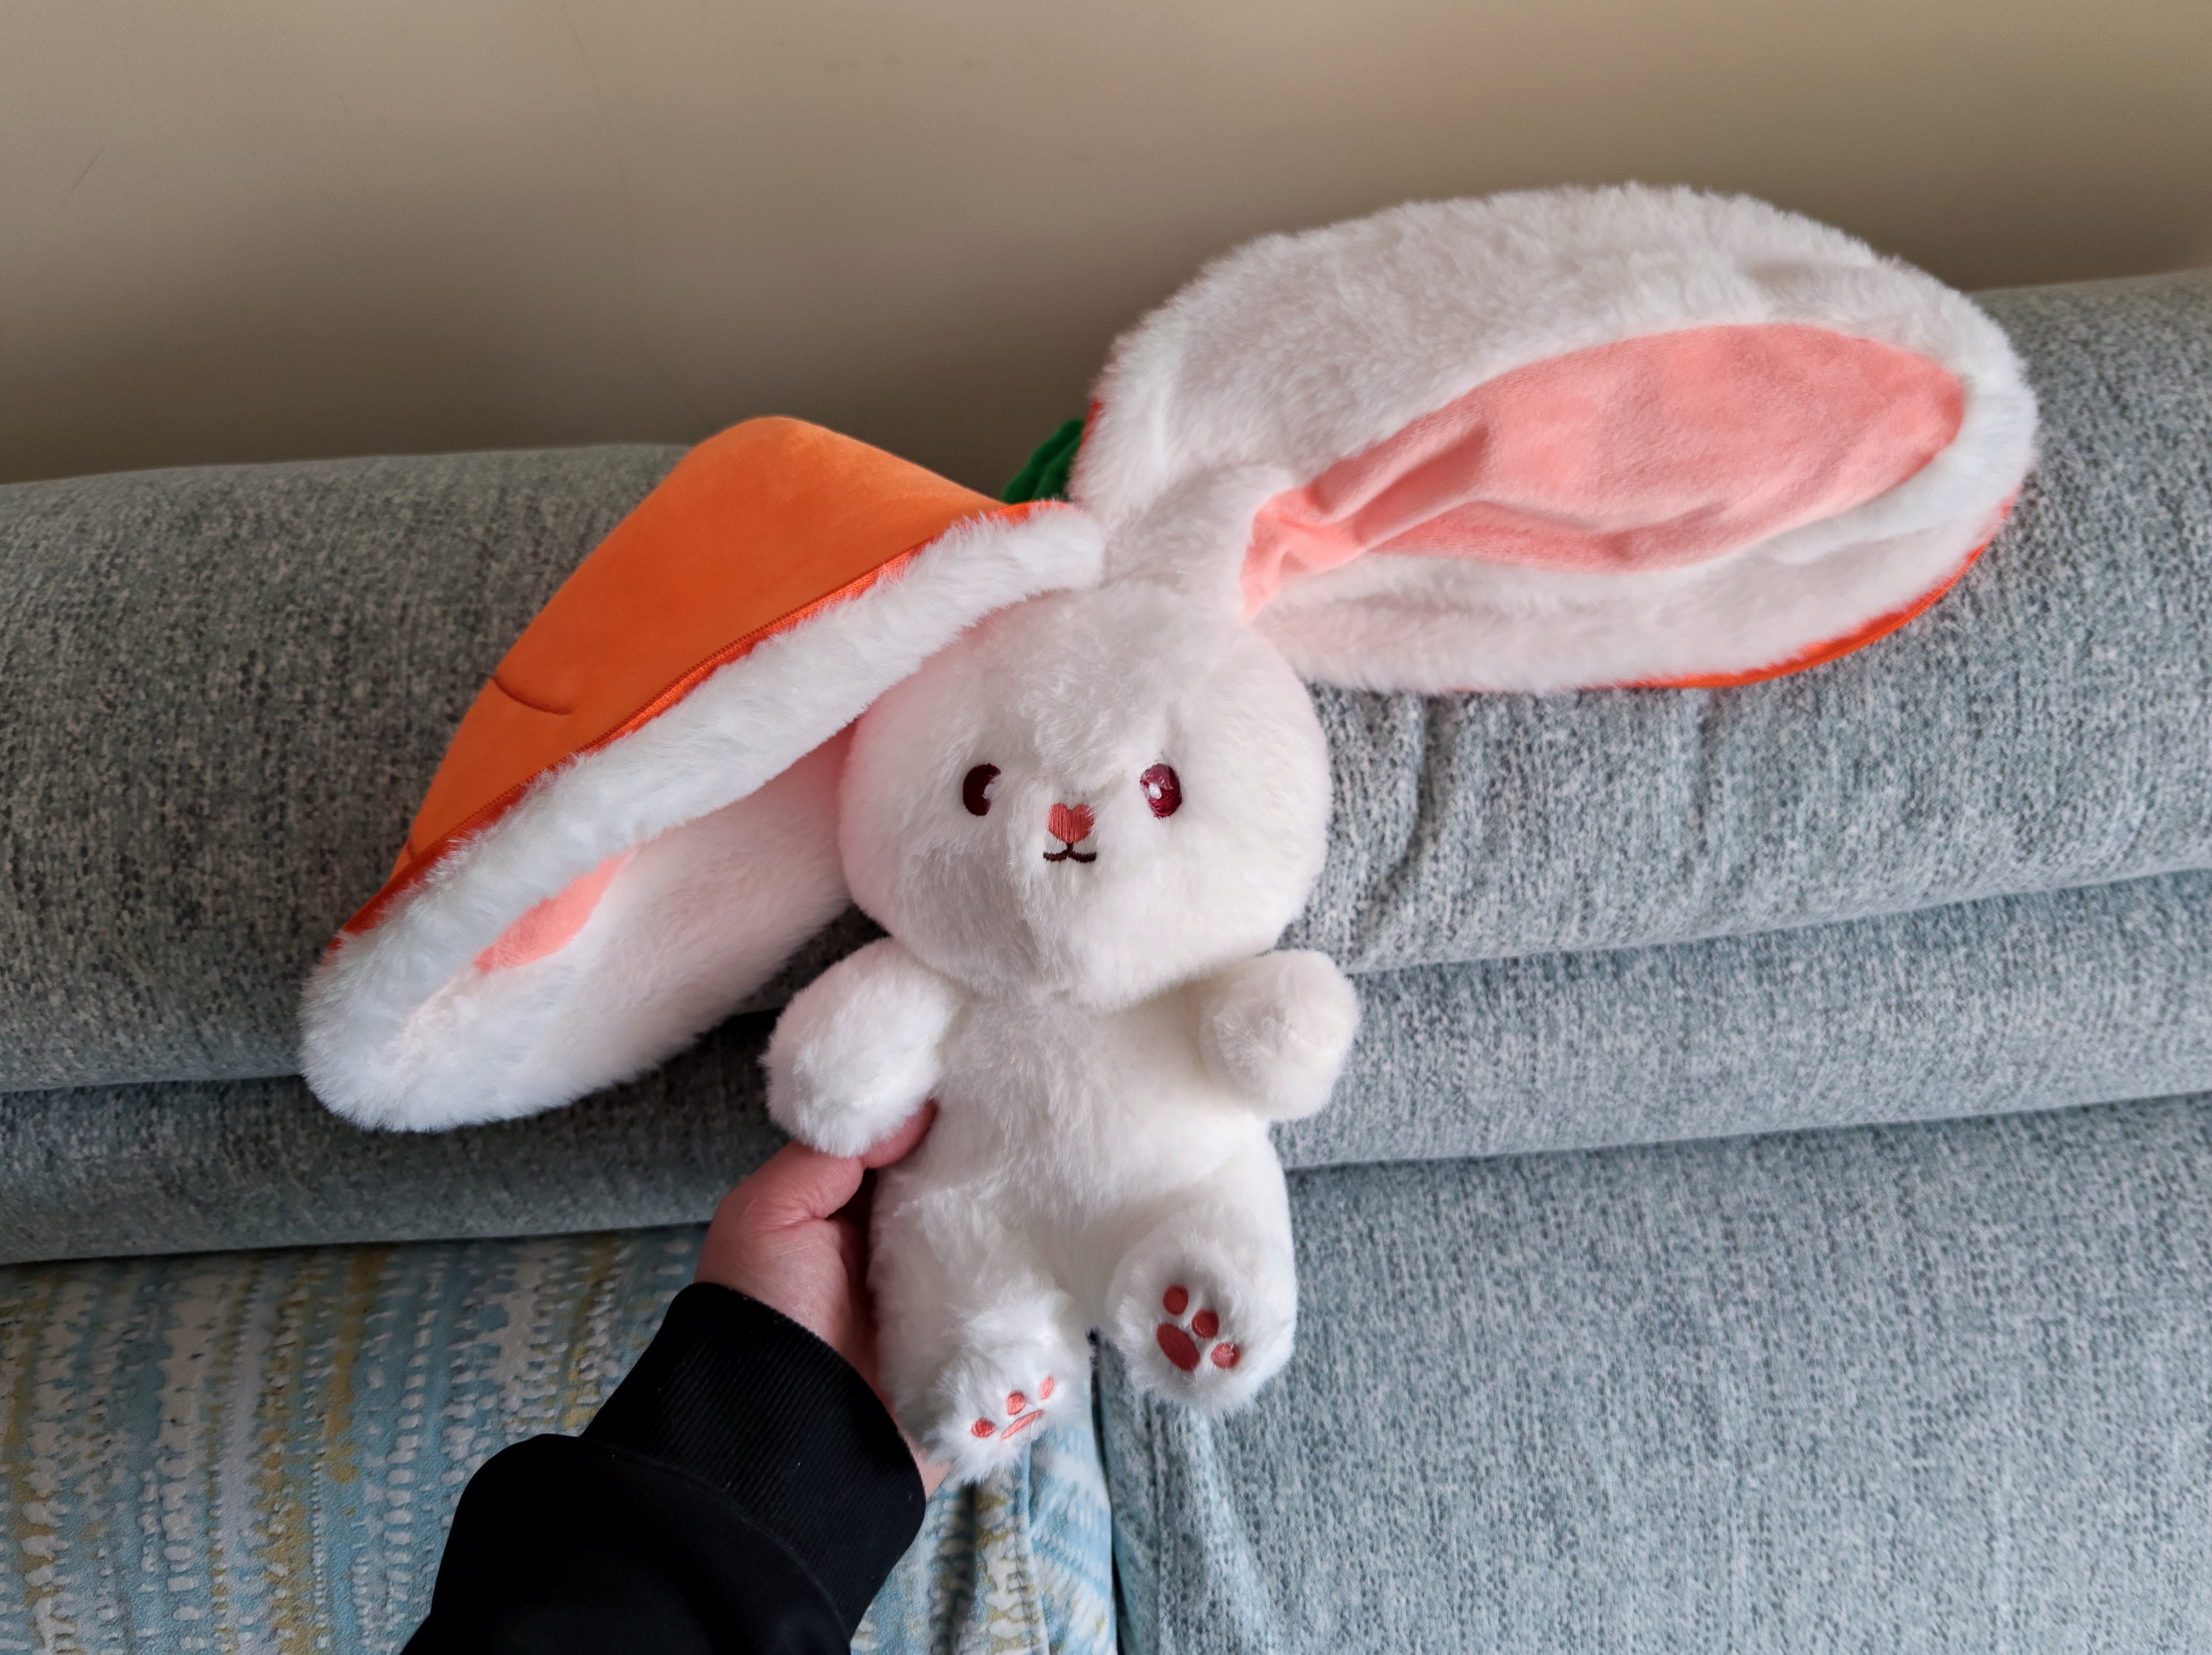 Jouet en peluche lapin transfigure Fruit Kawaii, jolie carotte fraise en  lapin, cadeau d'anniversaire et de noël pour enfants